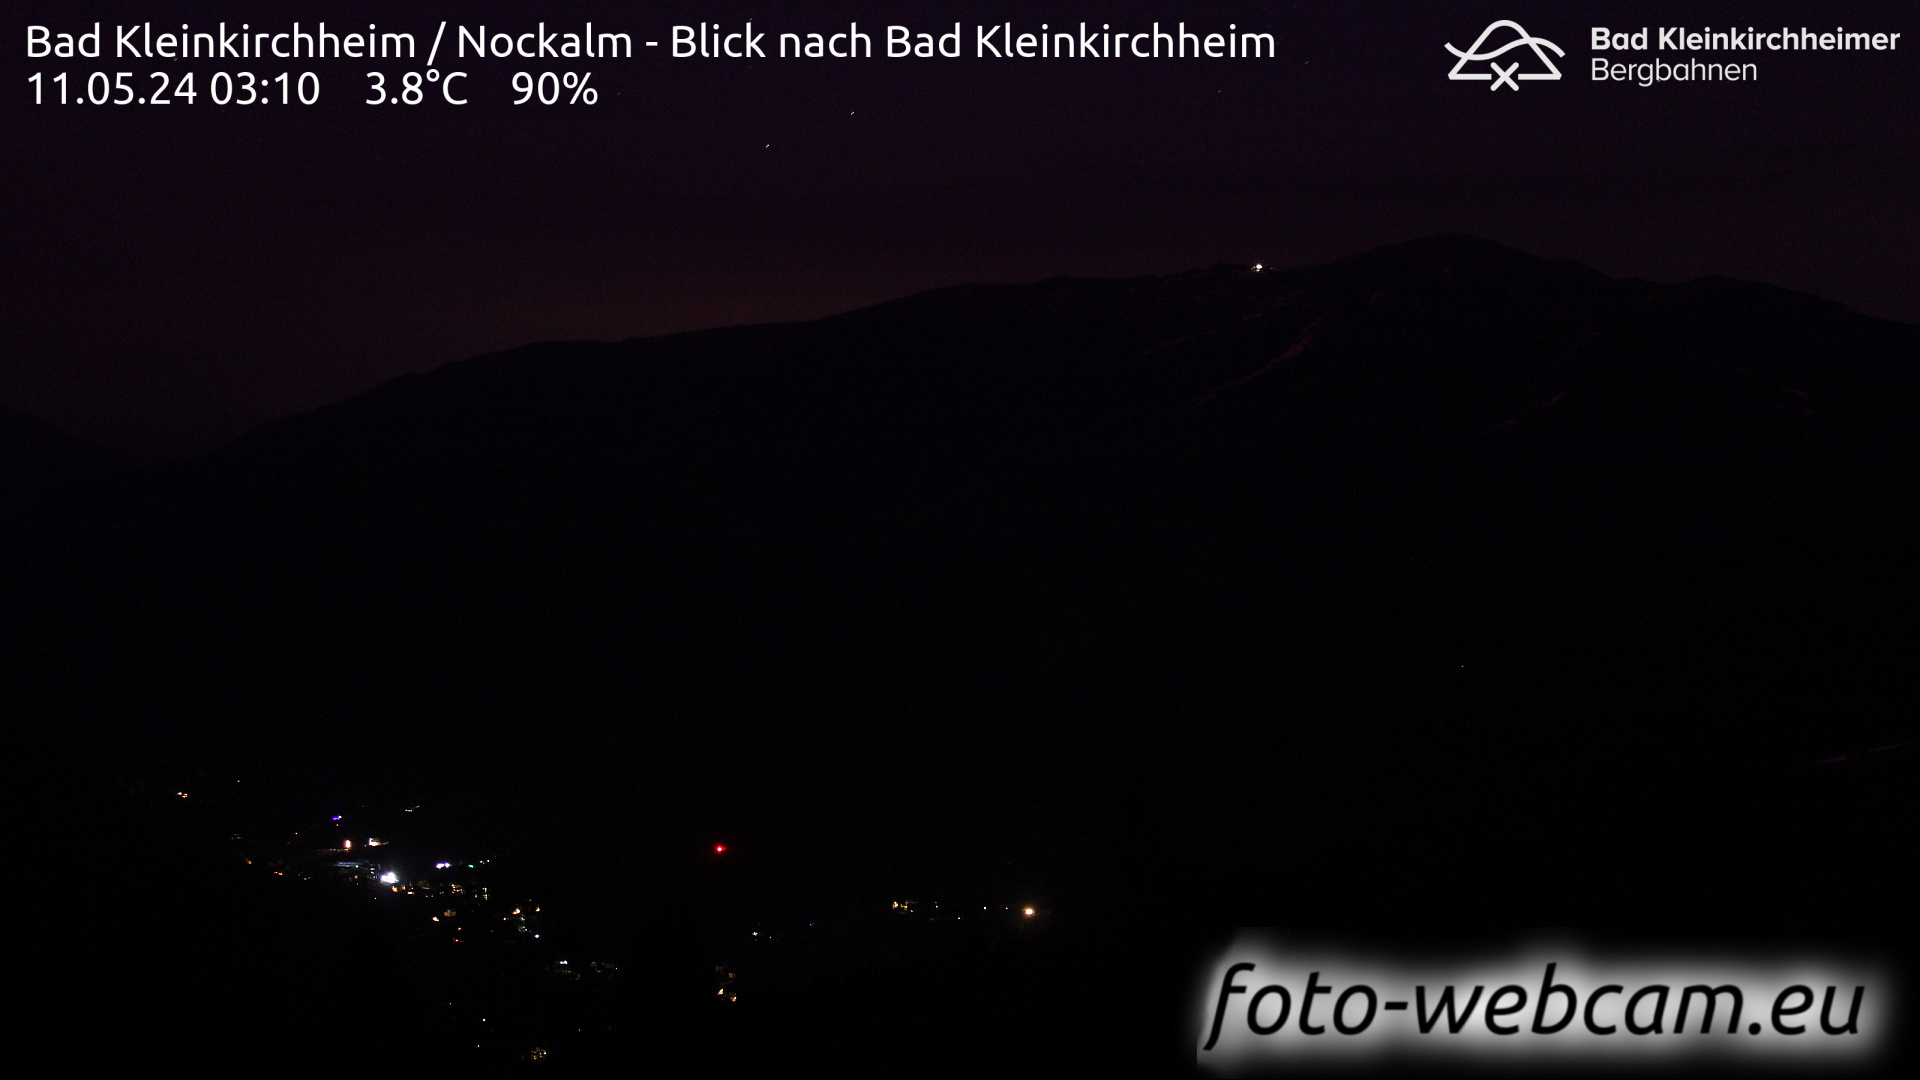 Bad Kleinkirchheim Man. 03:17